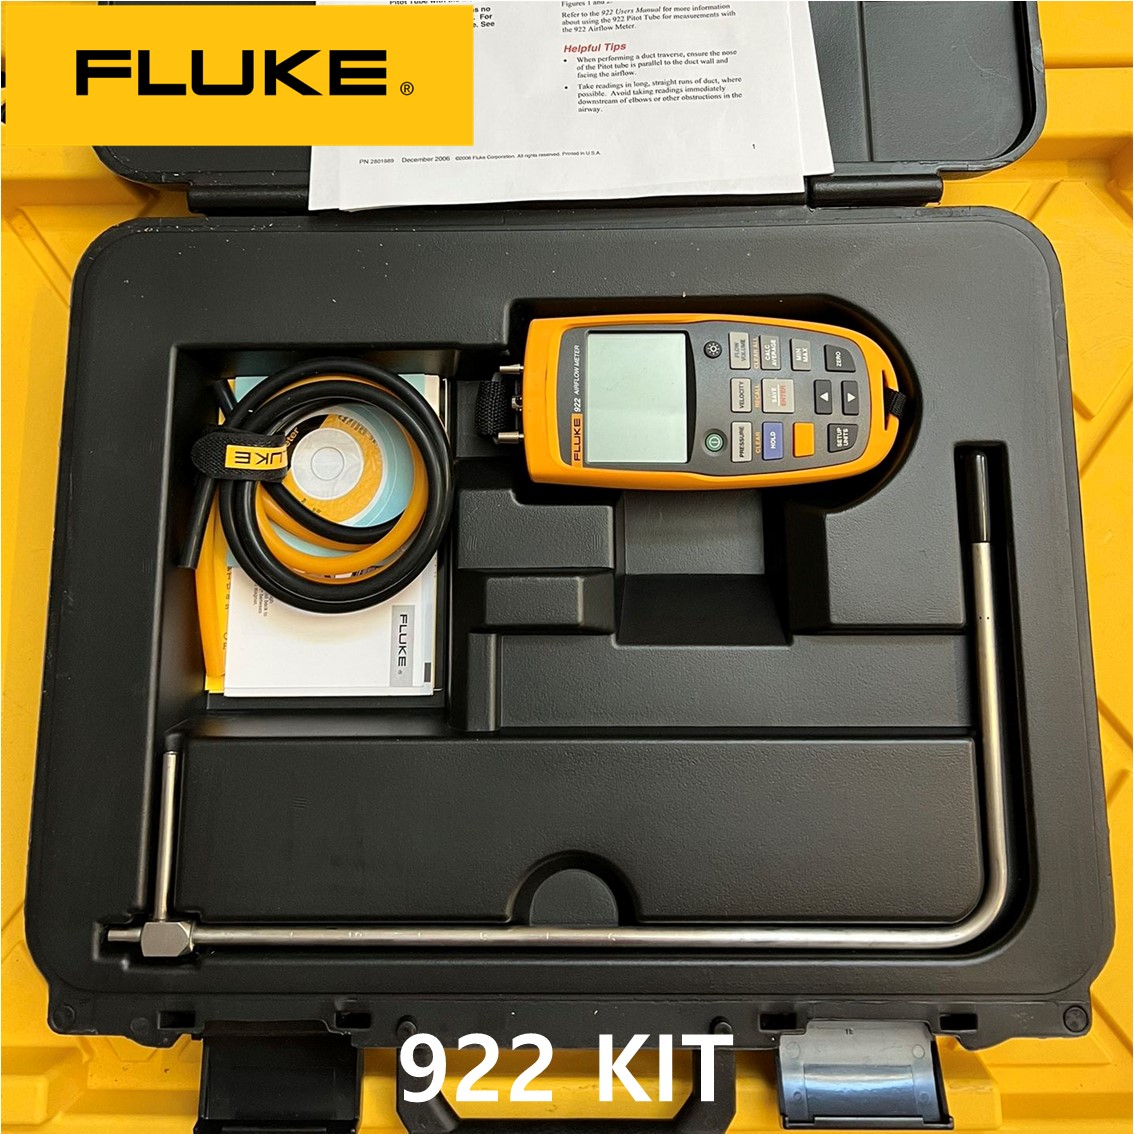 [FLUKE 922 KIT] HVAC용 공기흐름측정기,공기유량계, 차압,풍량계,풍속계 KIT